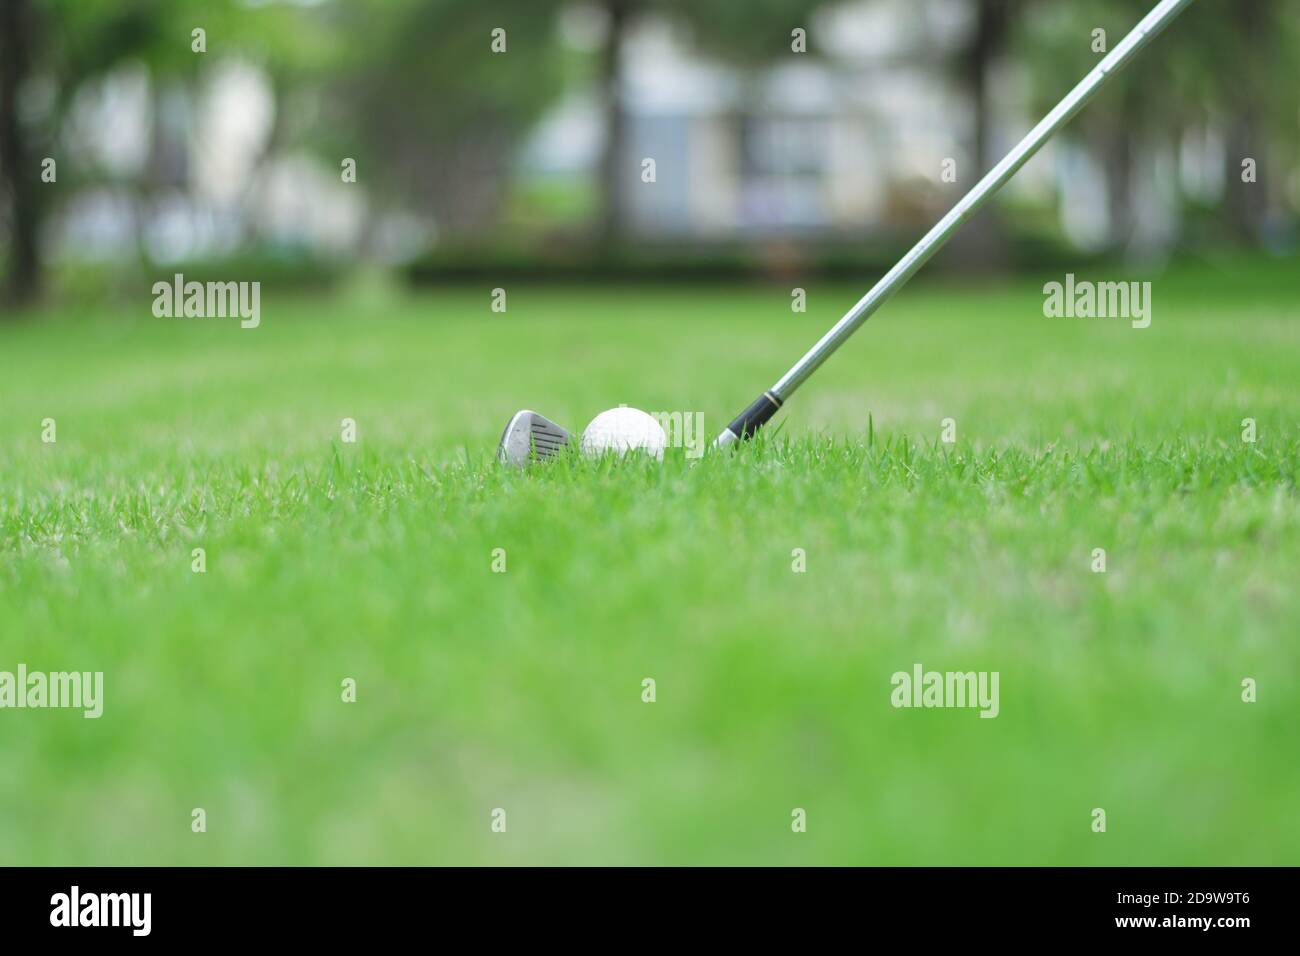 Gros plan sur le terrain de golf avec une balle de golf sur l'herbe verte. Banque D'Images